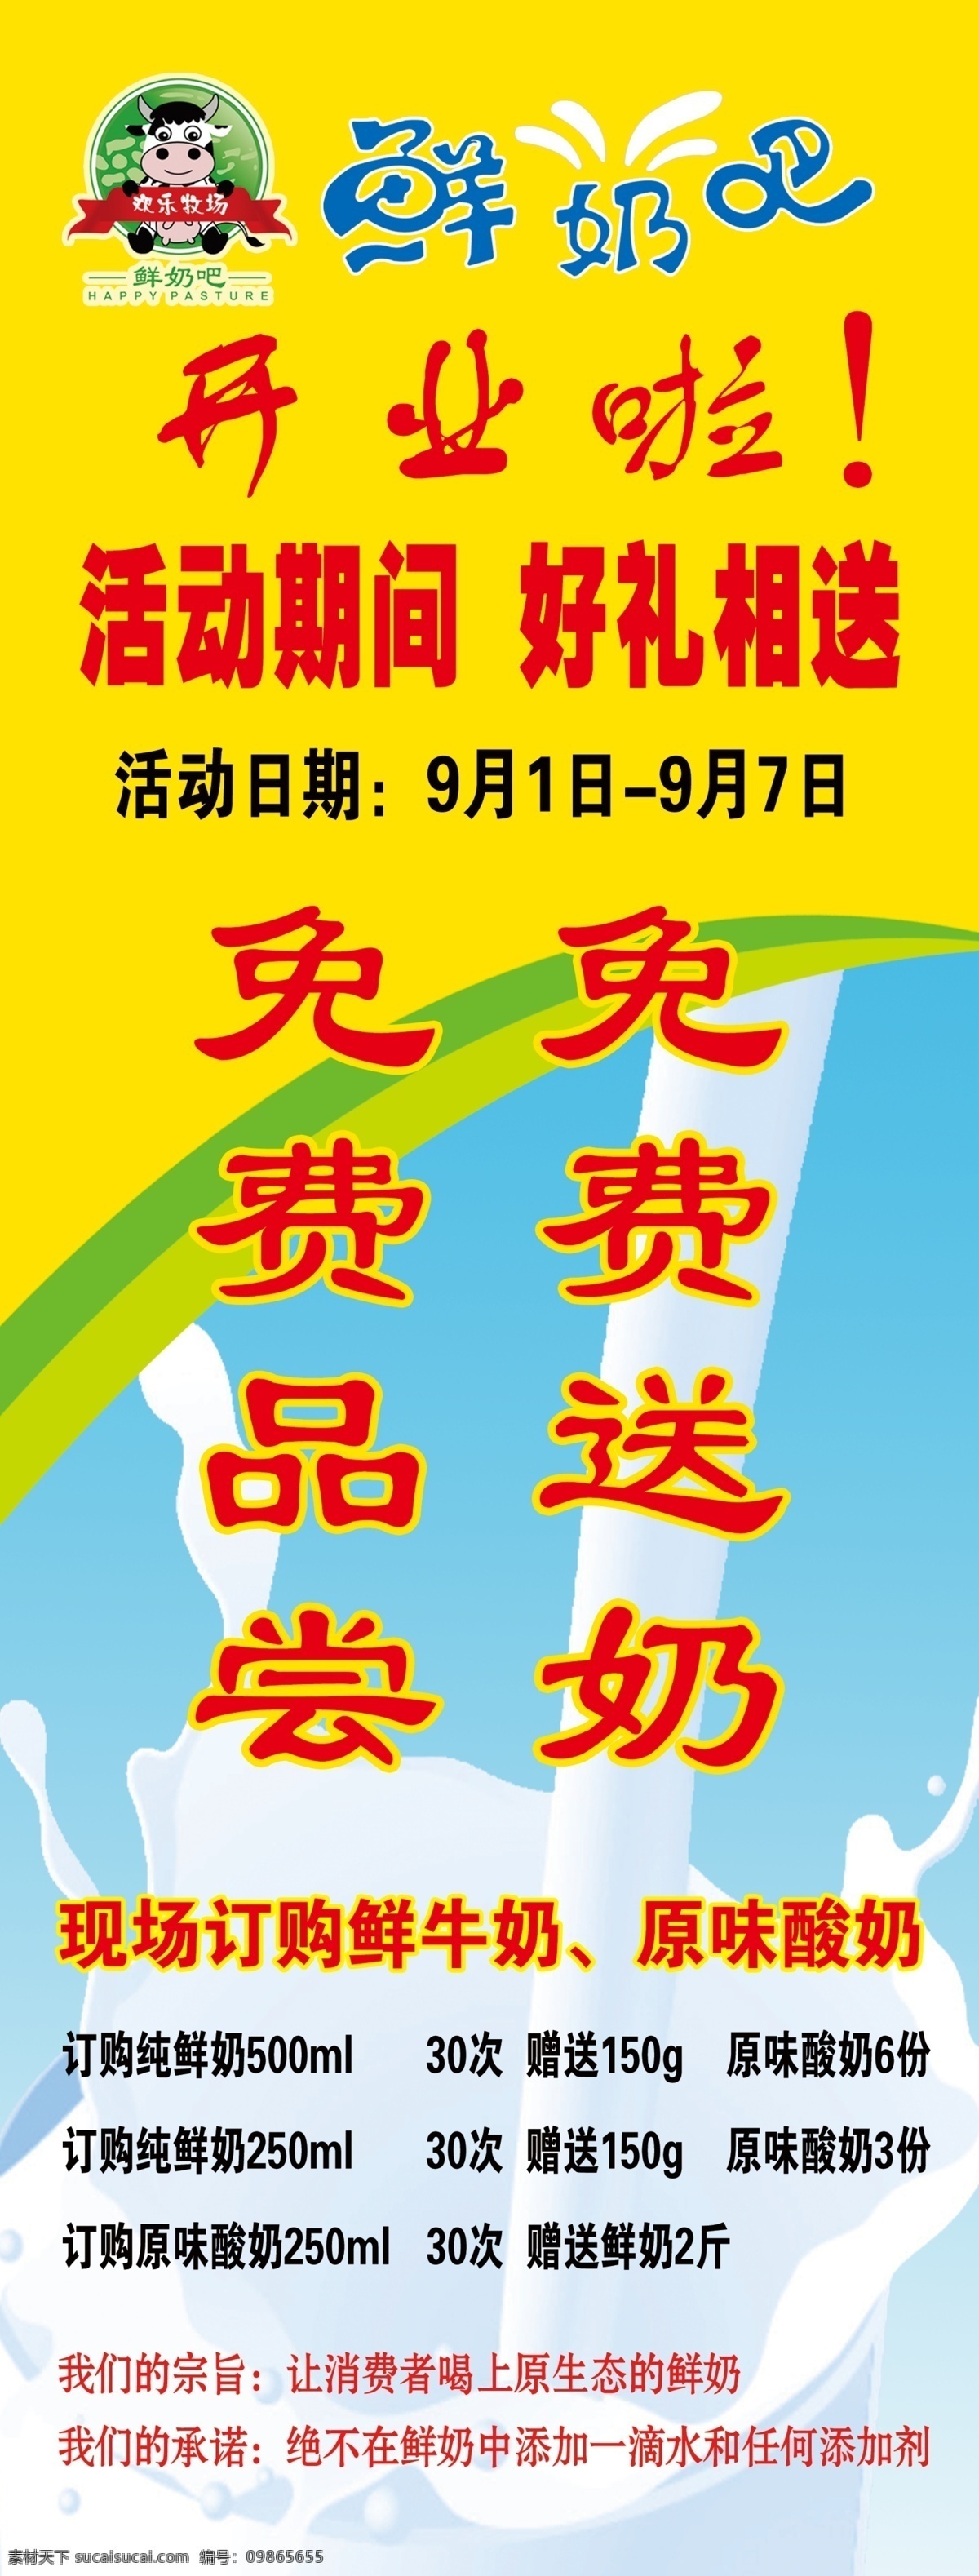 广告设计模板 黄色背景 牛奶 鲜奶吧 易拉宝 源文件 展板模板 鲜奶 模板下载 鲜奶吧易拉宝 牛奶北京 欢乐牧场标志 易拉宝设计